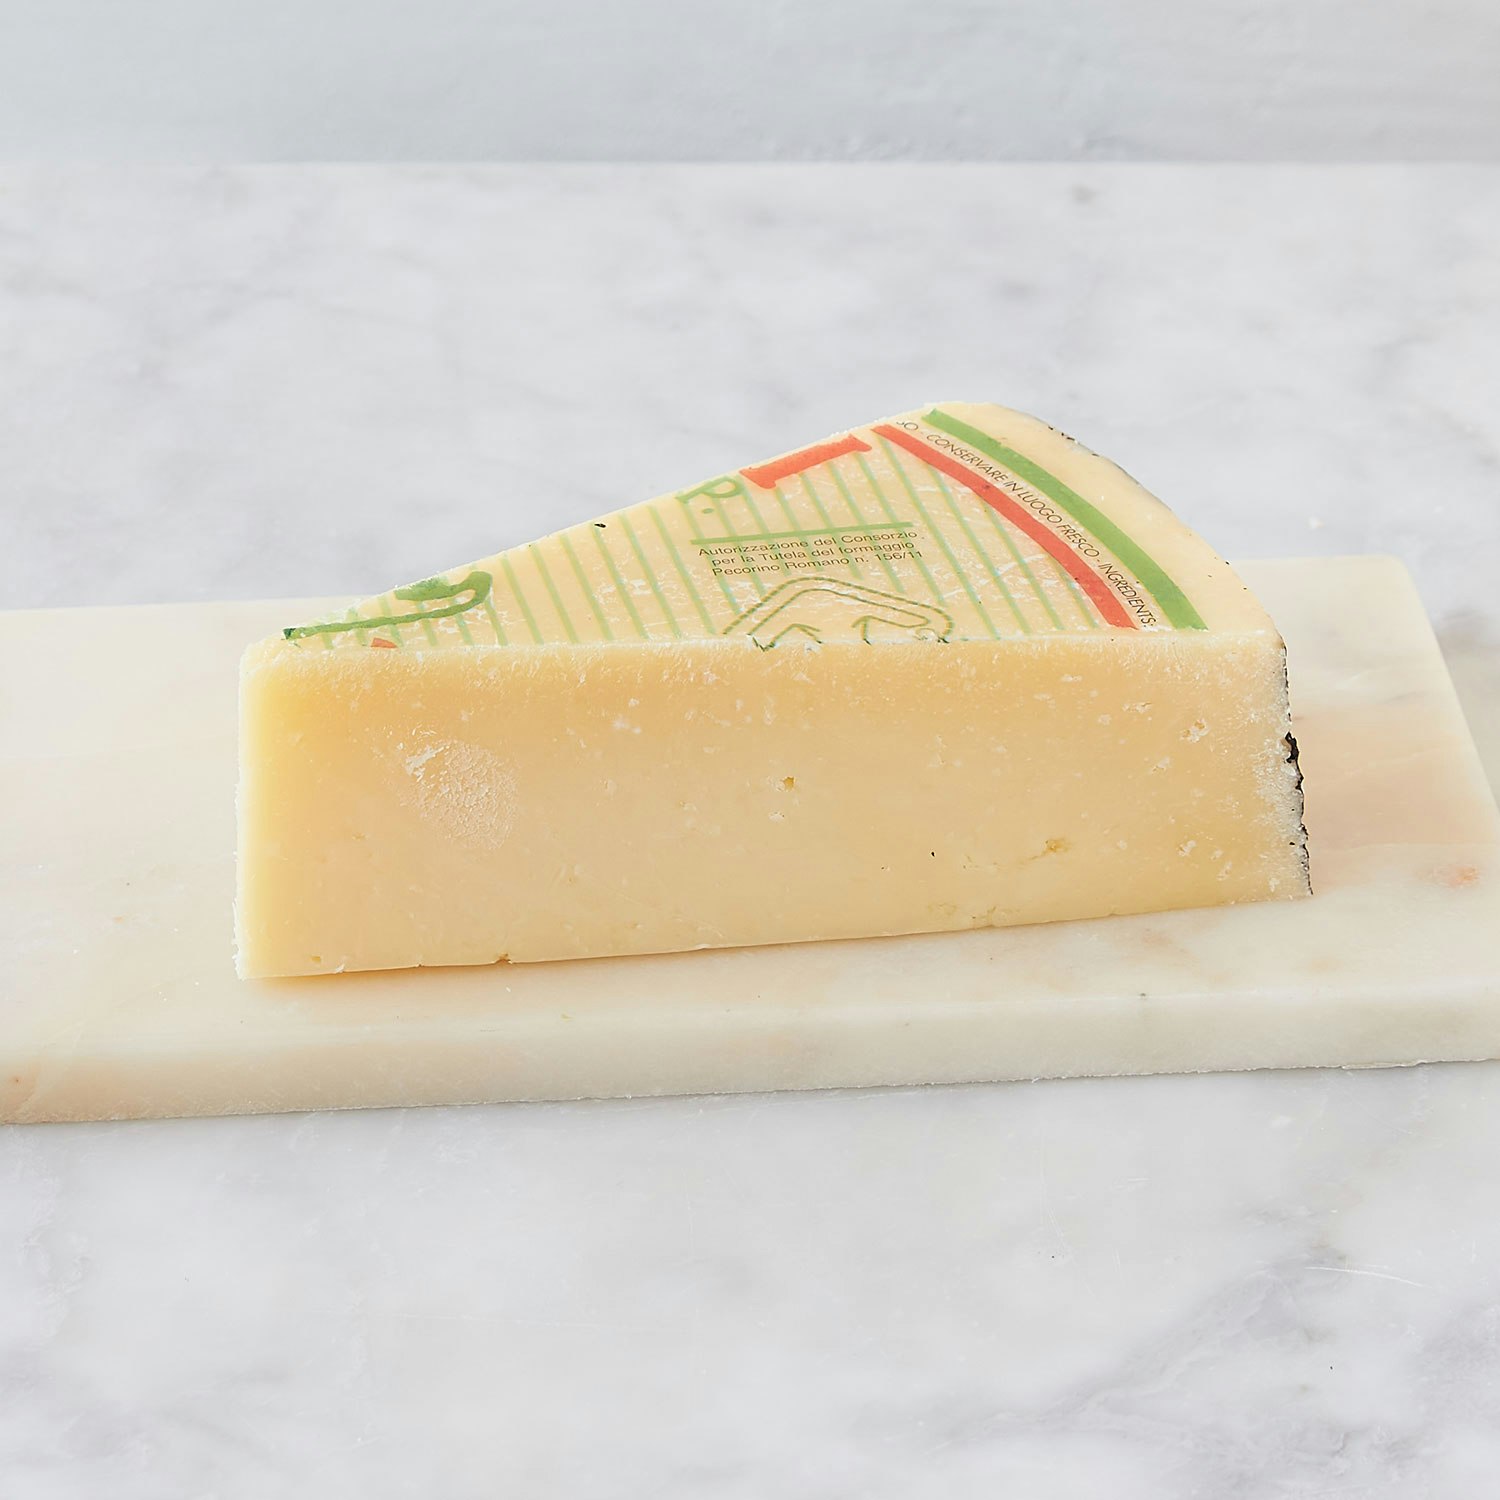 fulvi pecorino romano cheese